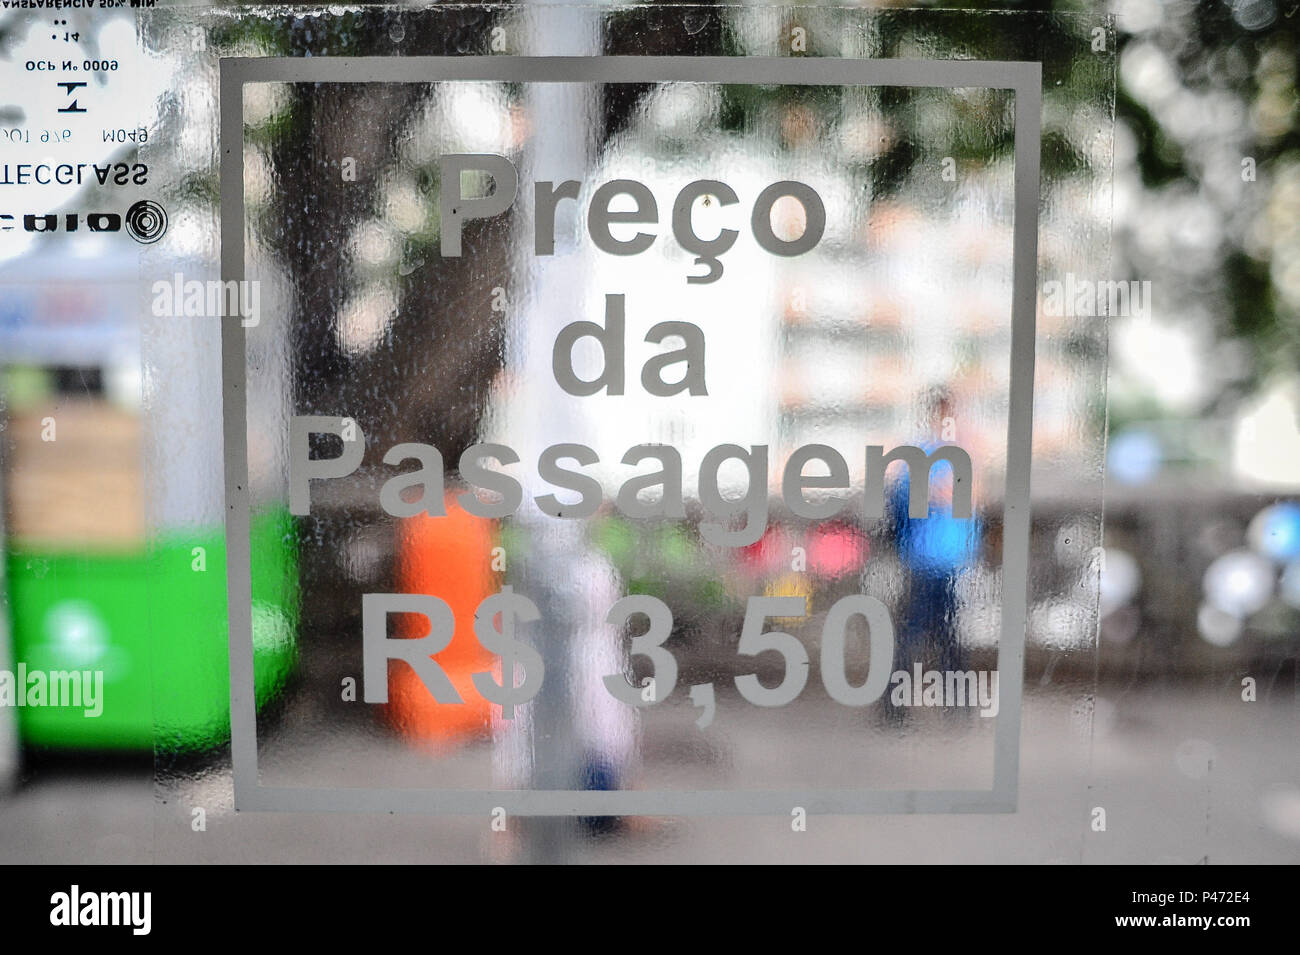 SÃO PAULO, SP - 06/01/2015: AUMENTO DAS TARIFAS EM SP -  Aumento das tarifas em SP. As passagens de ônibus, trens e Metrô de São Paulo estão mais caras a partir desta terça-feira (6). A tarifa passou de R$ 3 para R$ 3,50. O valor vale para os ônibus da capital paulista, além do Metrô e da CPTM, que atendem a região metropolitana. O valor da integração também subiu de R$ 4,65 para R$ 5,45. (Foto: Adriano Lima / Fotoarena) Stock Photo